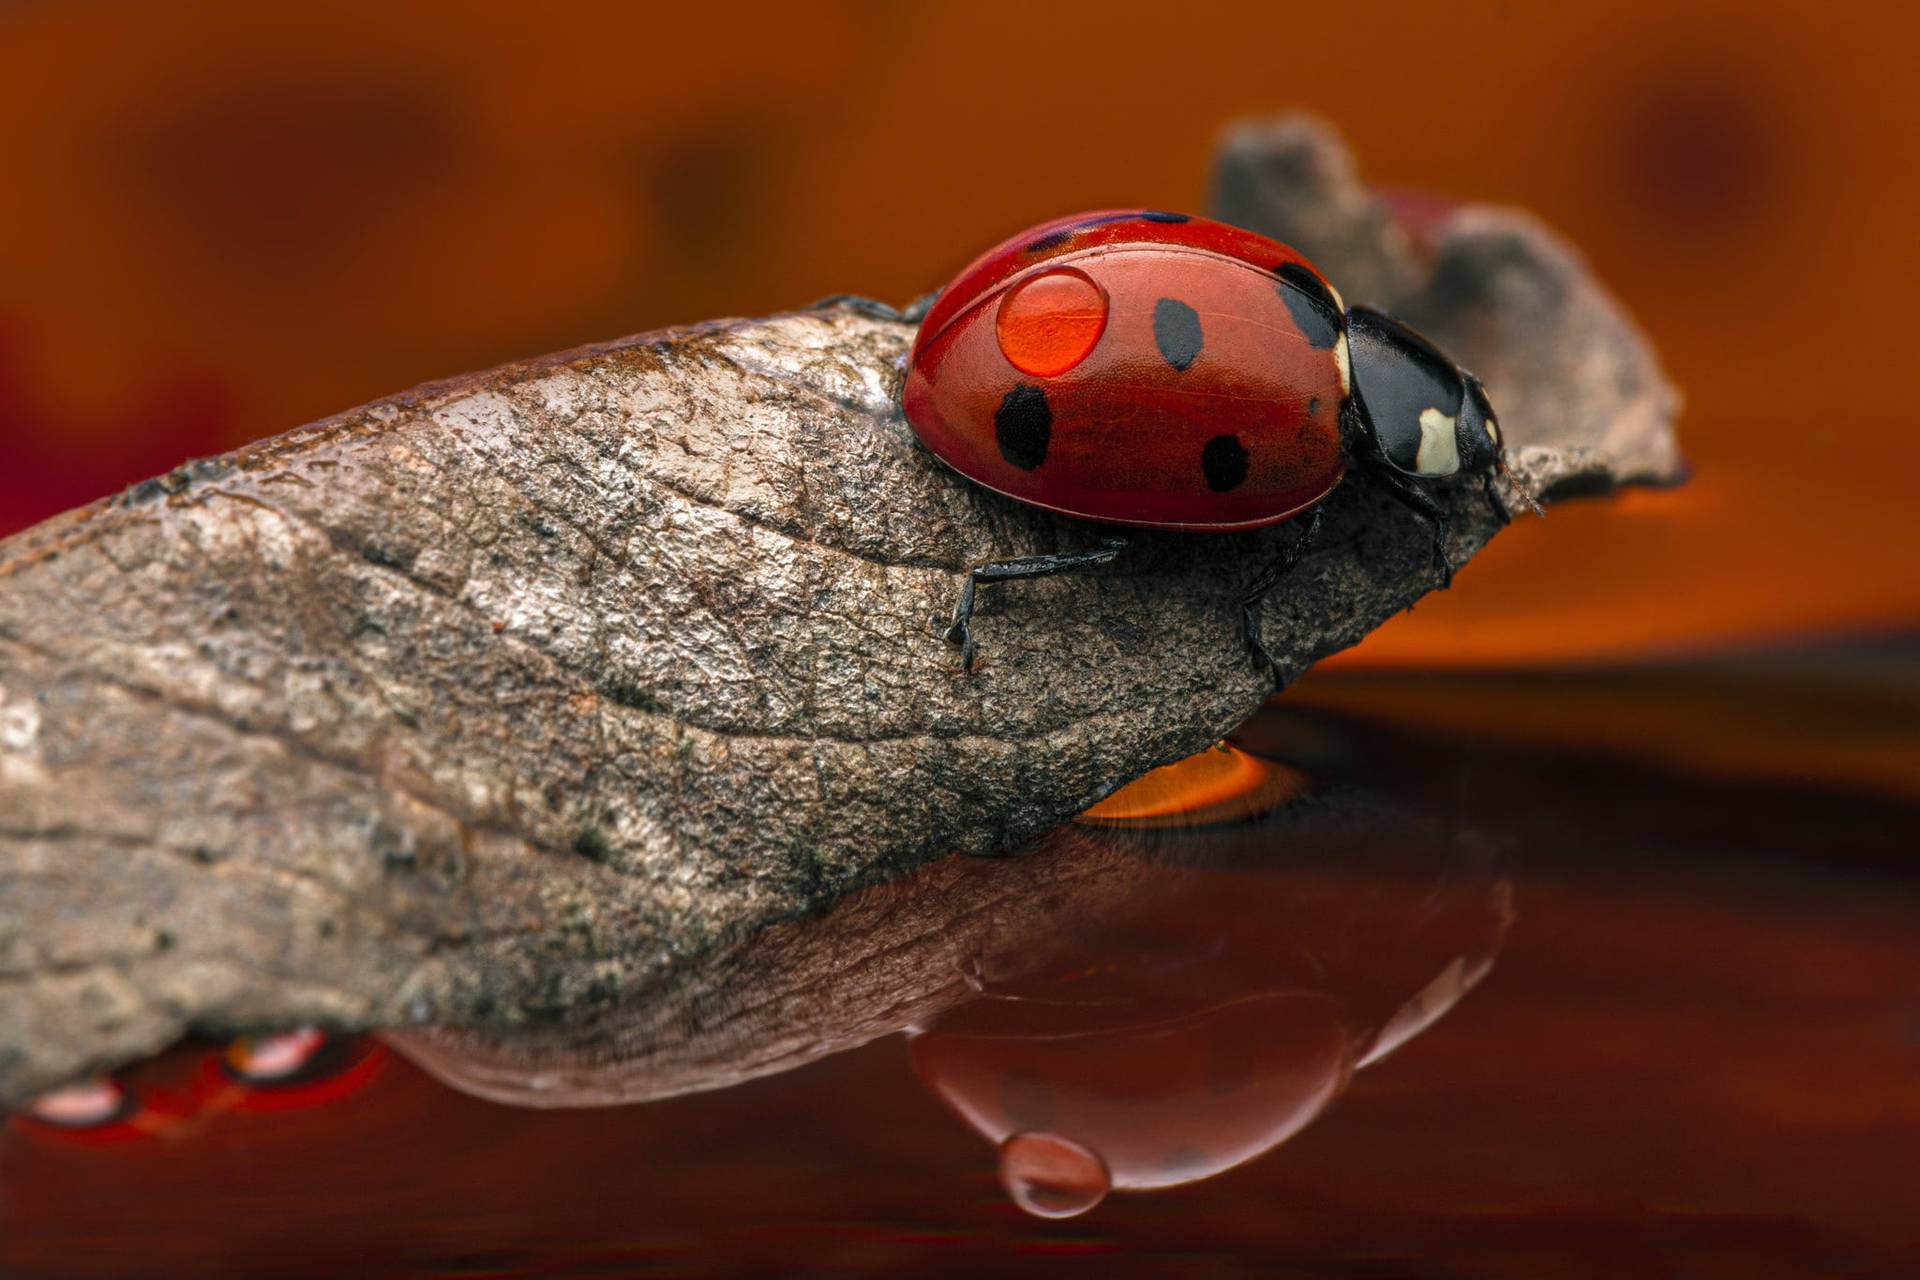 Ladybug Riding A Dried Leaf Wallpaper